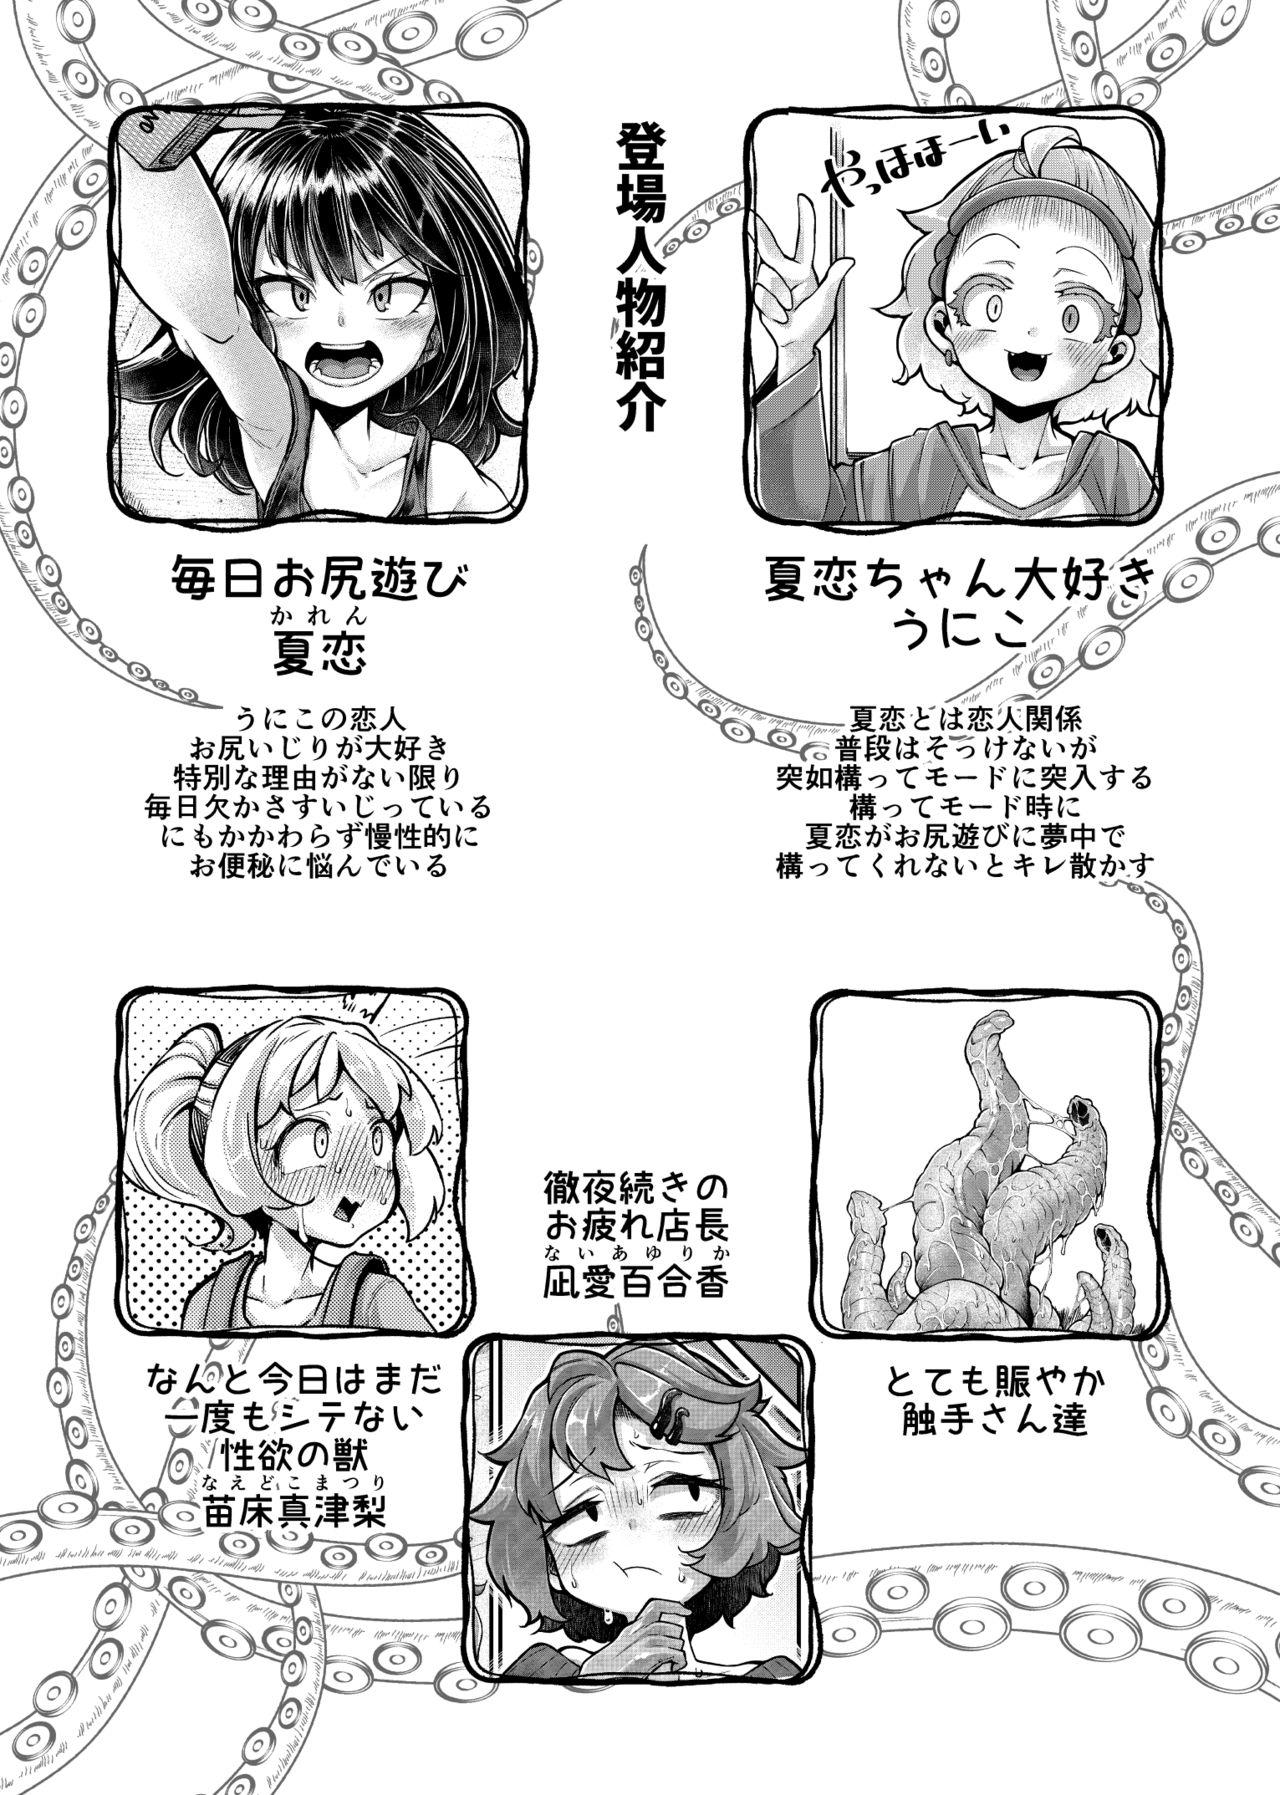 Aunt Anata no Machi no Shokushuya-san 4.5 - Original Tanned - Page 4